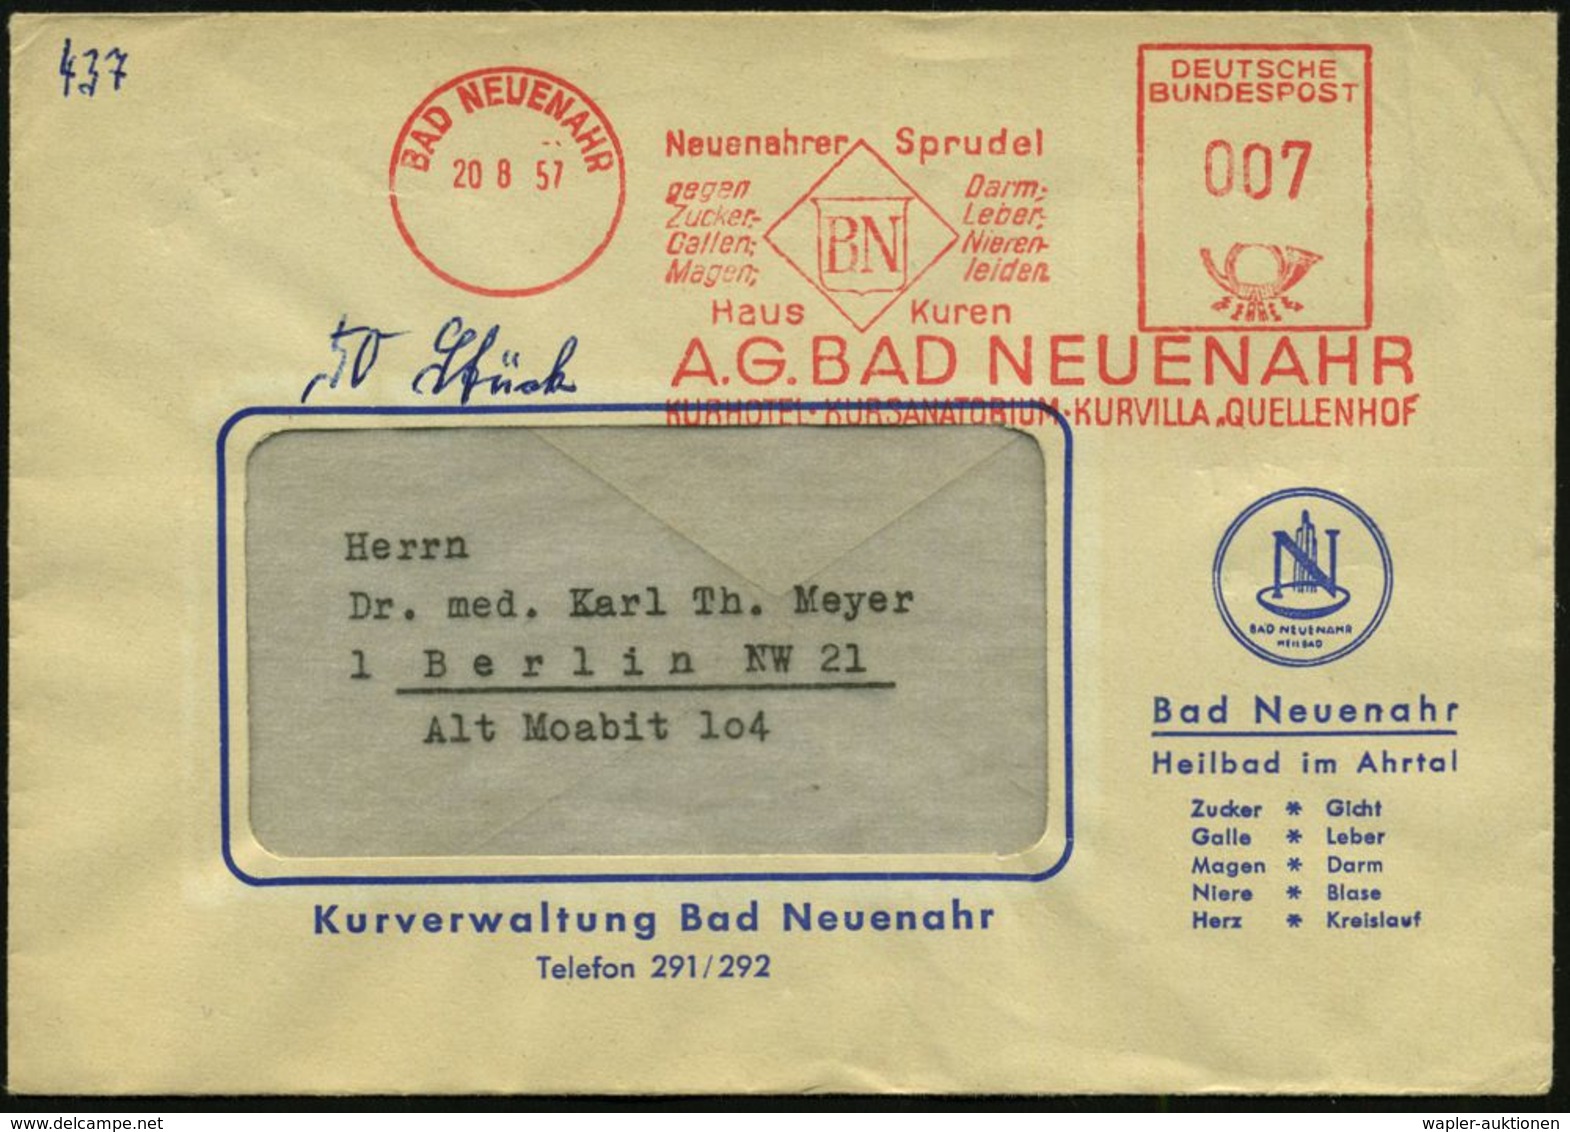 KRANKHEITEN : BAD NEUENAHR/ Neuenahrer Sprudel/ Gegen/ Zucker-/ Gallen-,Magen-,/ Darm..leiden 1957 (20.8.) Seltener AFS- - Disease